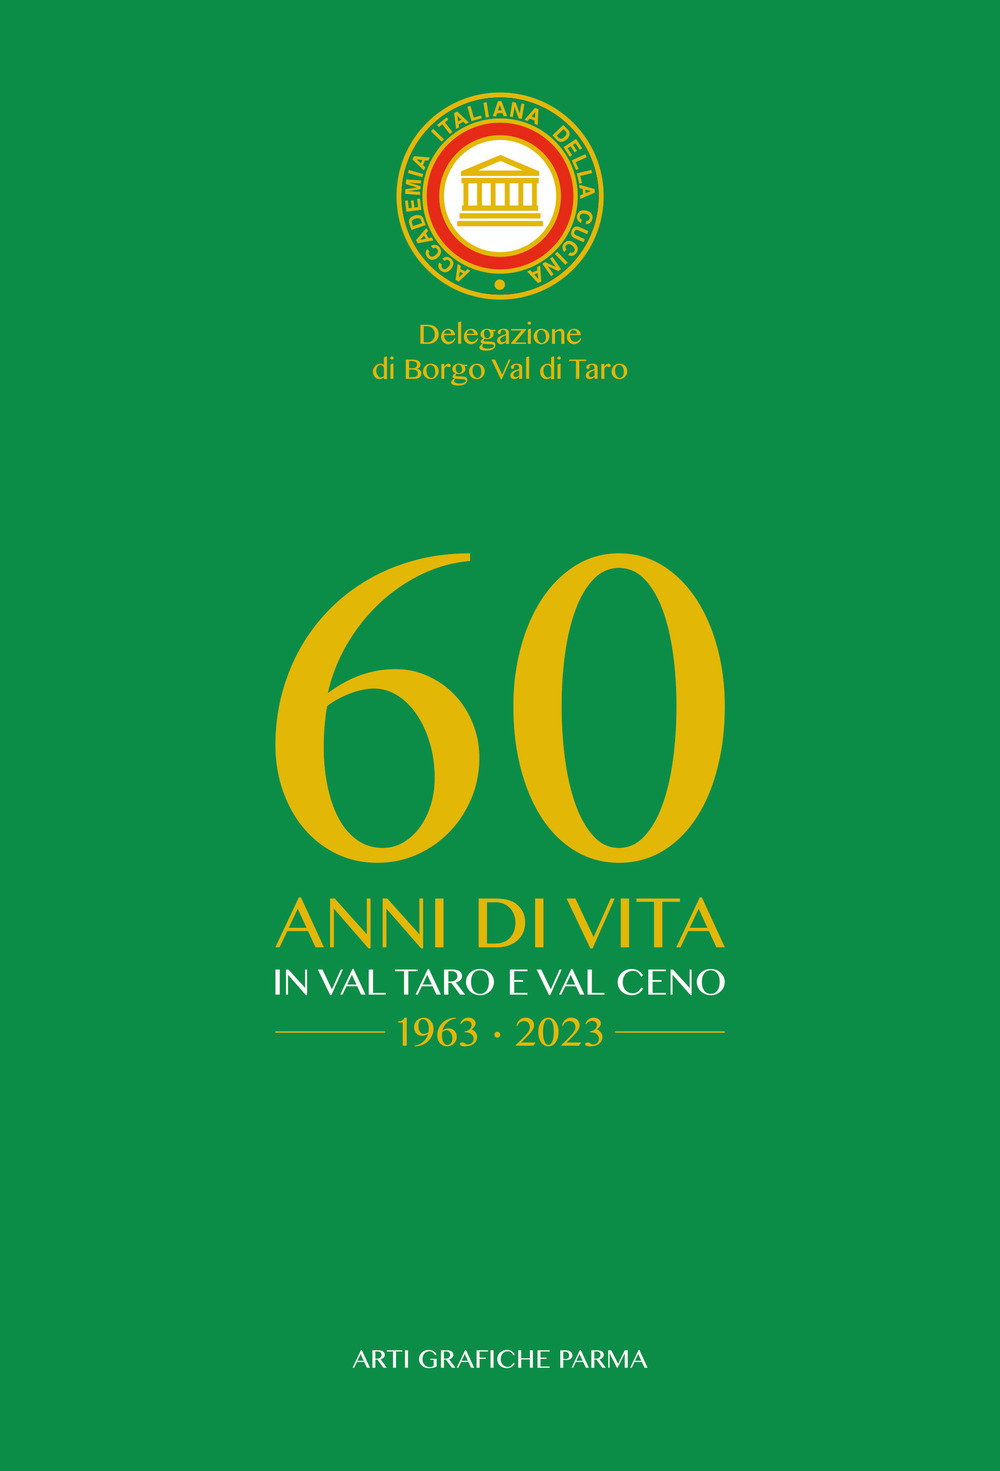 Accademia italiana della cucina. Delegazione di borgo Val di Taro. 60 anni di vita in Val Taro e Val Ceno 1963-2023